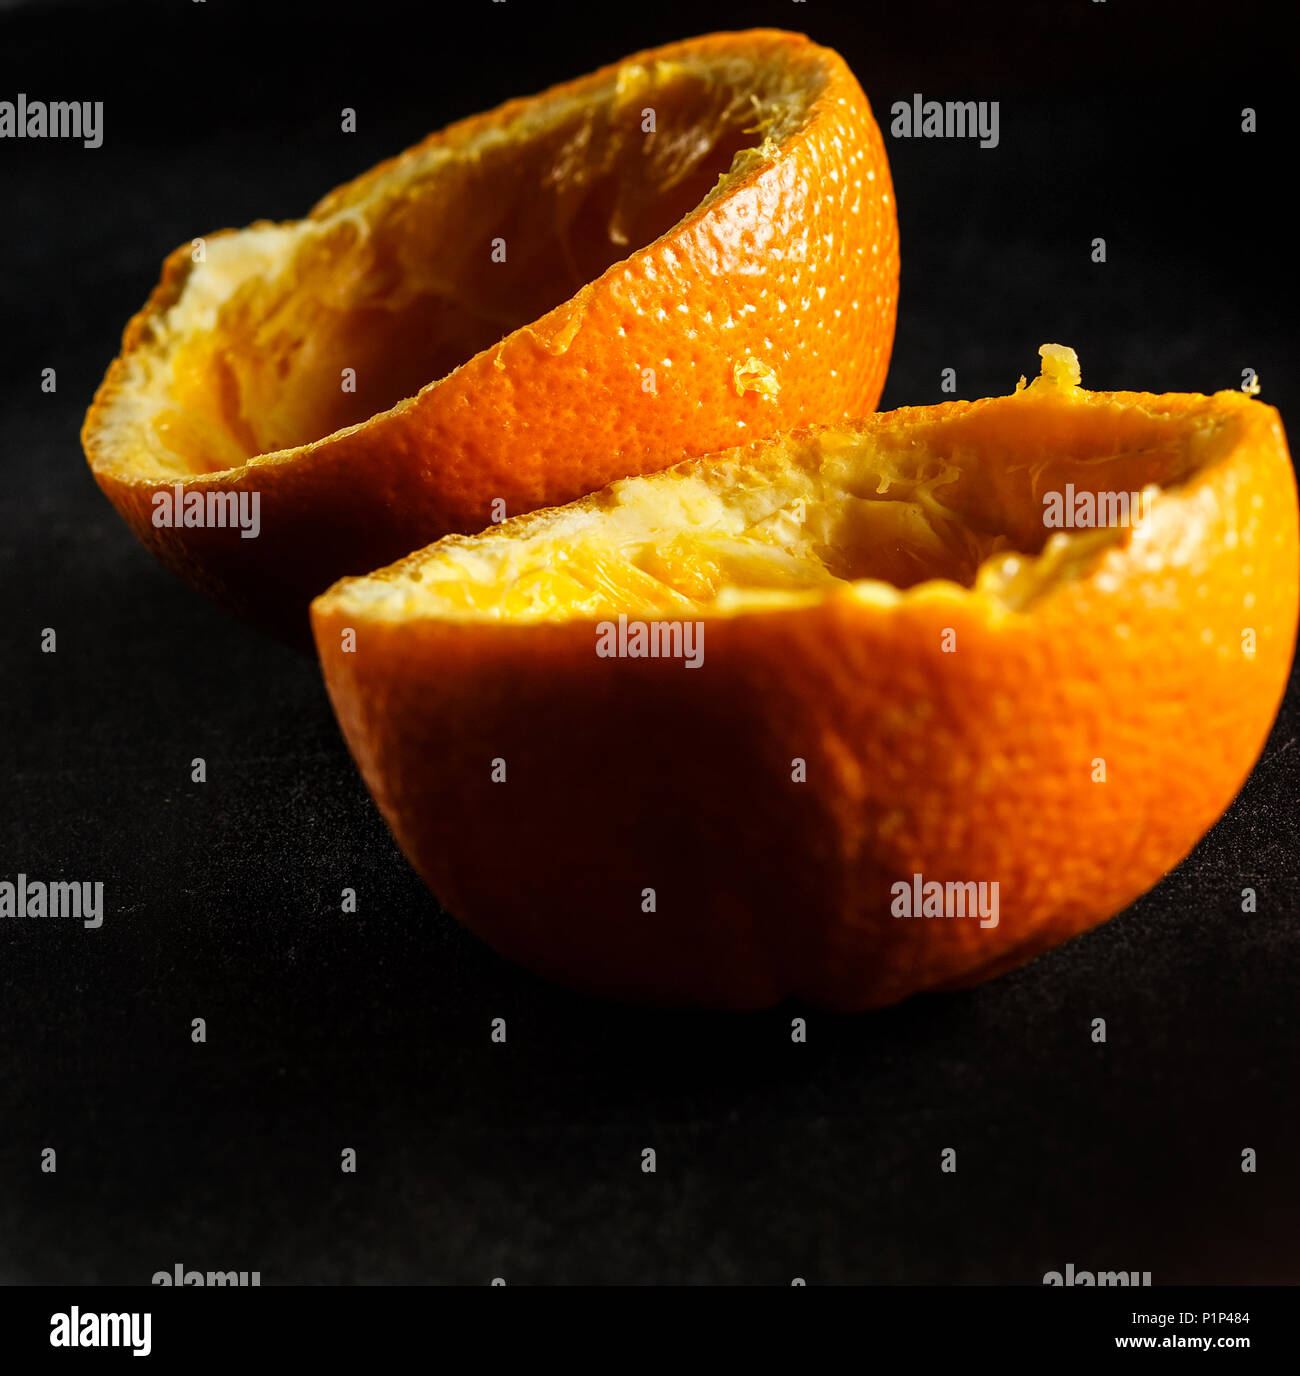 Used orange skins with dramatic light on black background. Square image. Stock Photo